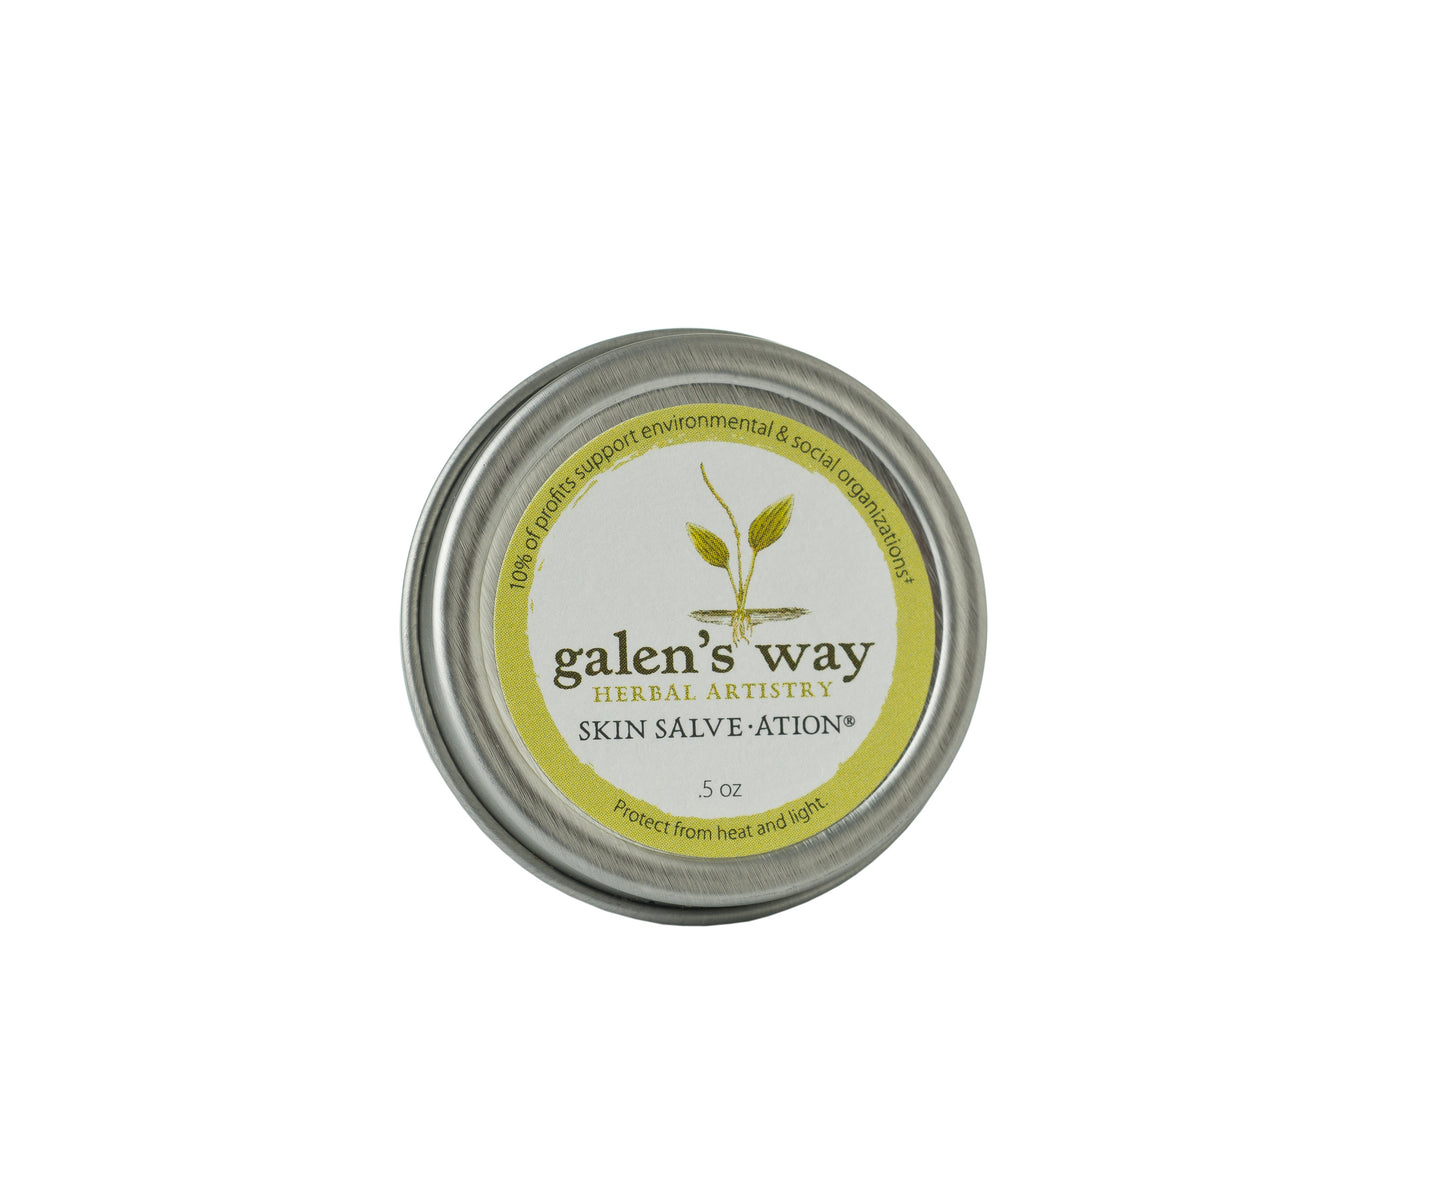 Galen's Way Skin Salve-ation